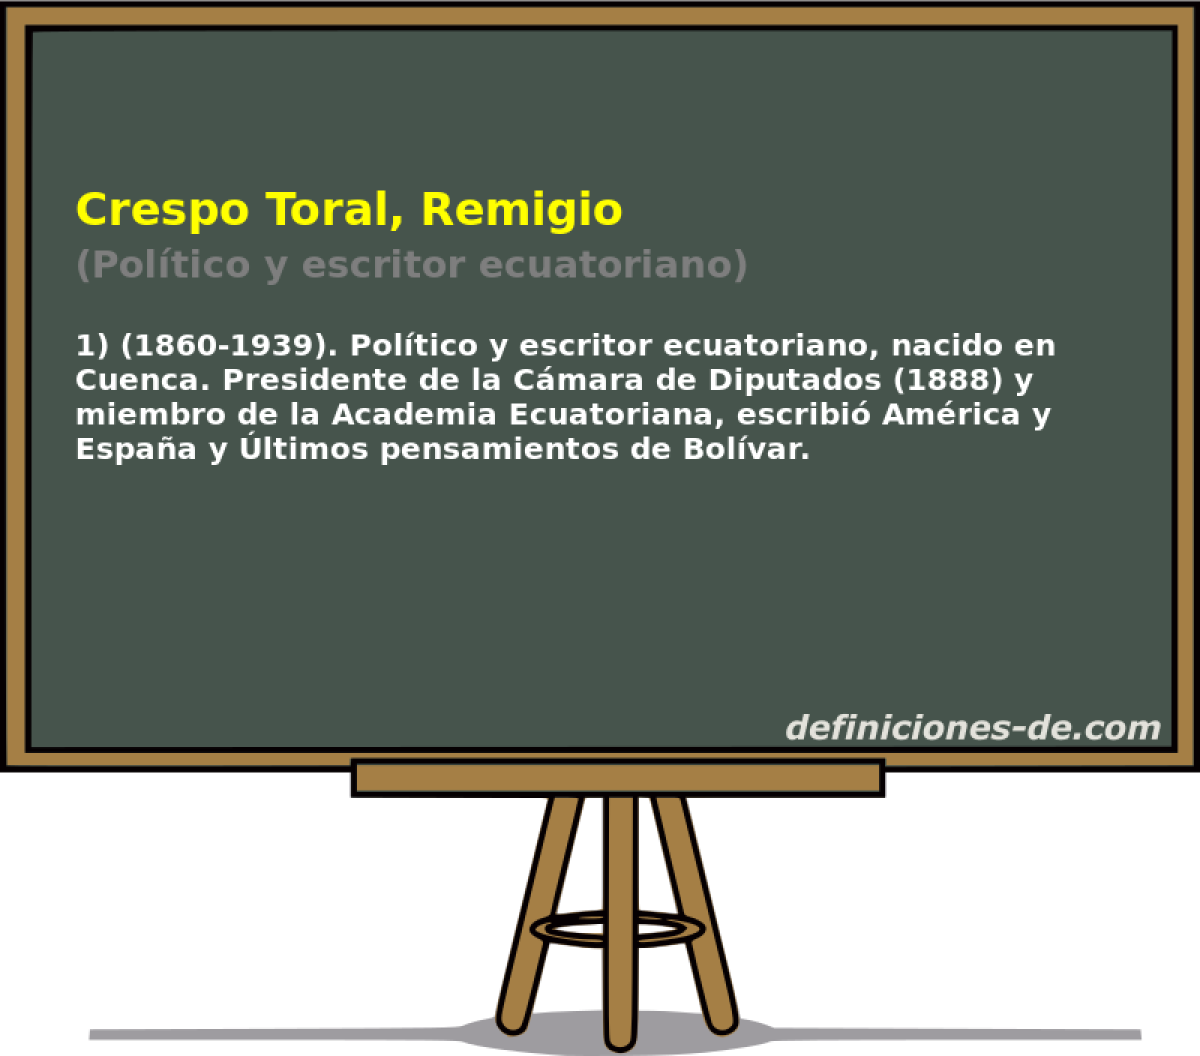 Crespo Toral, Remigio (Poltico y escritor ecuatoriano)